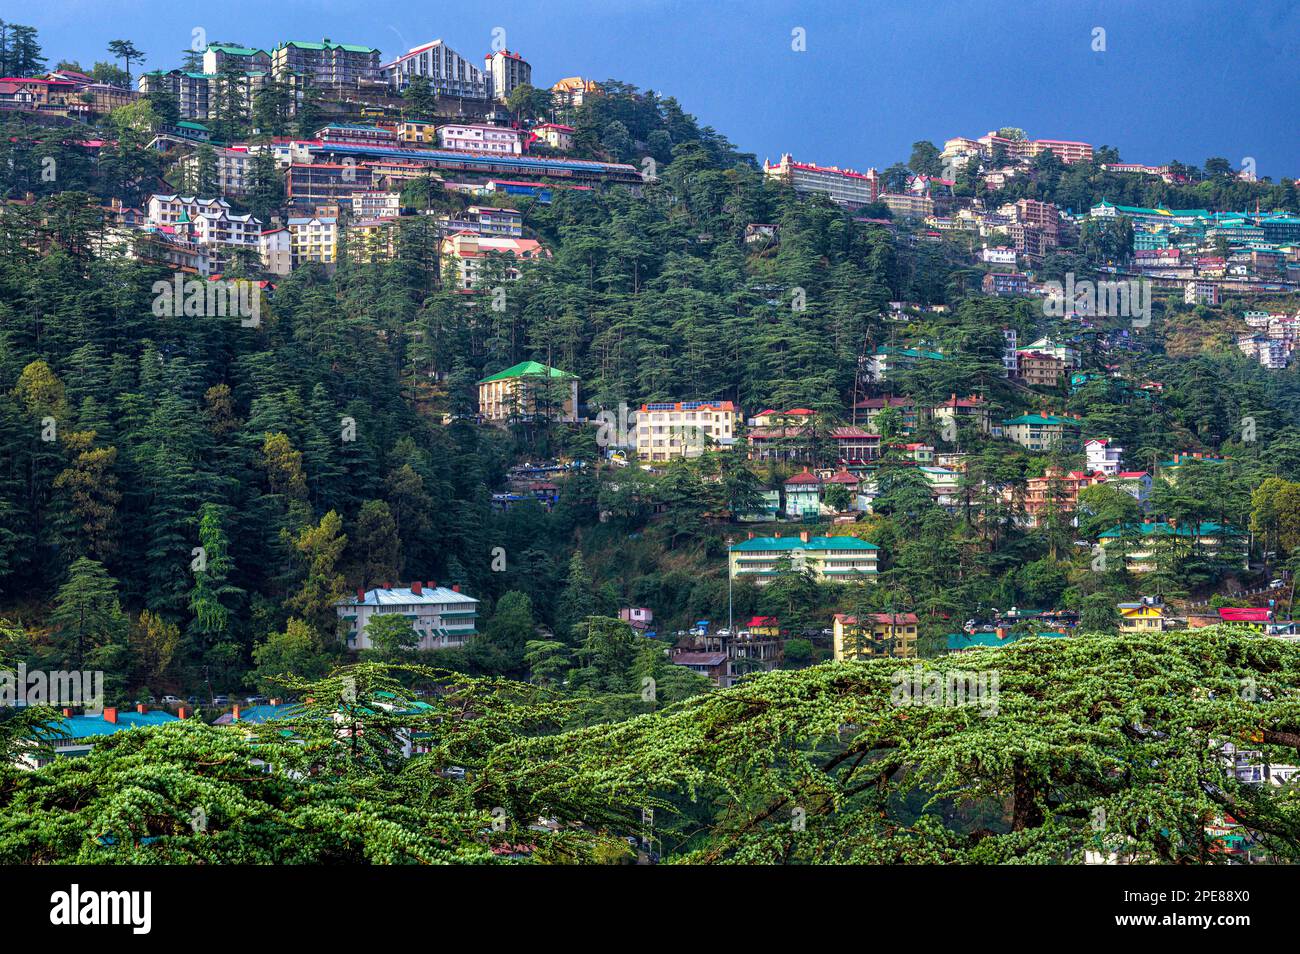 Vue sur le quartier commerçant de Shimla depuis l'hôtel Elysium Banque D'Images